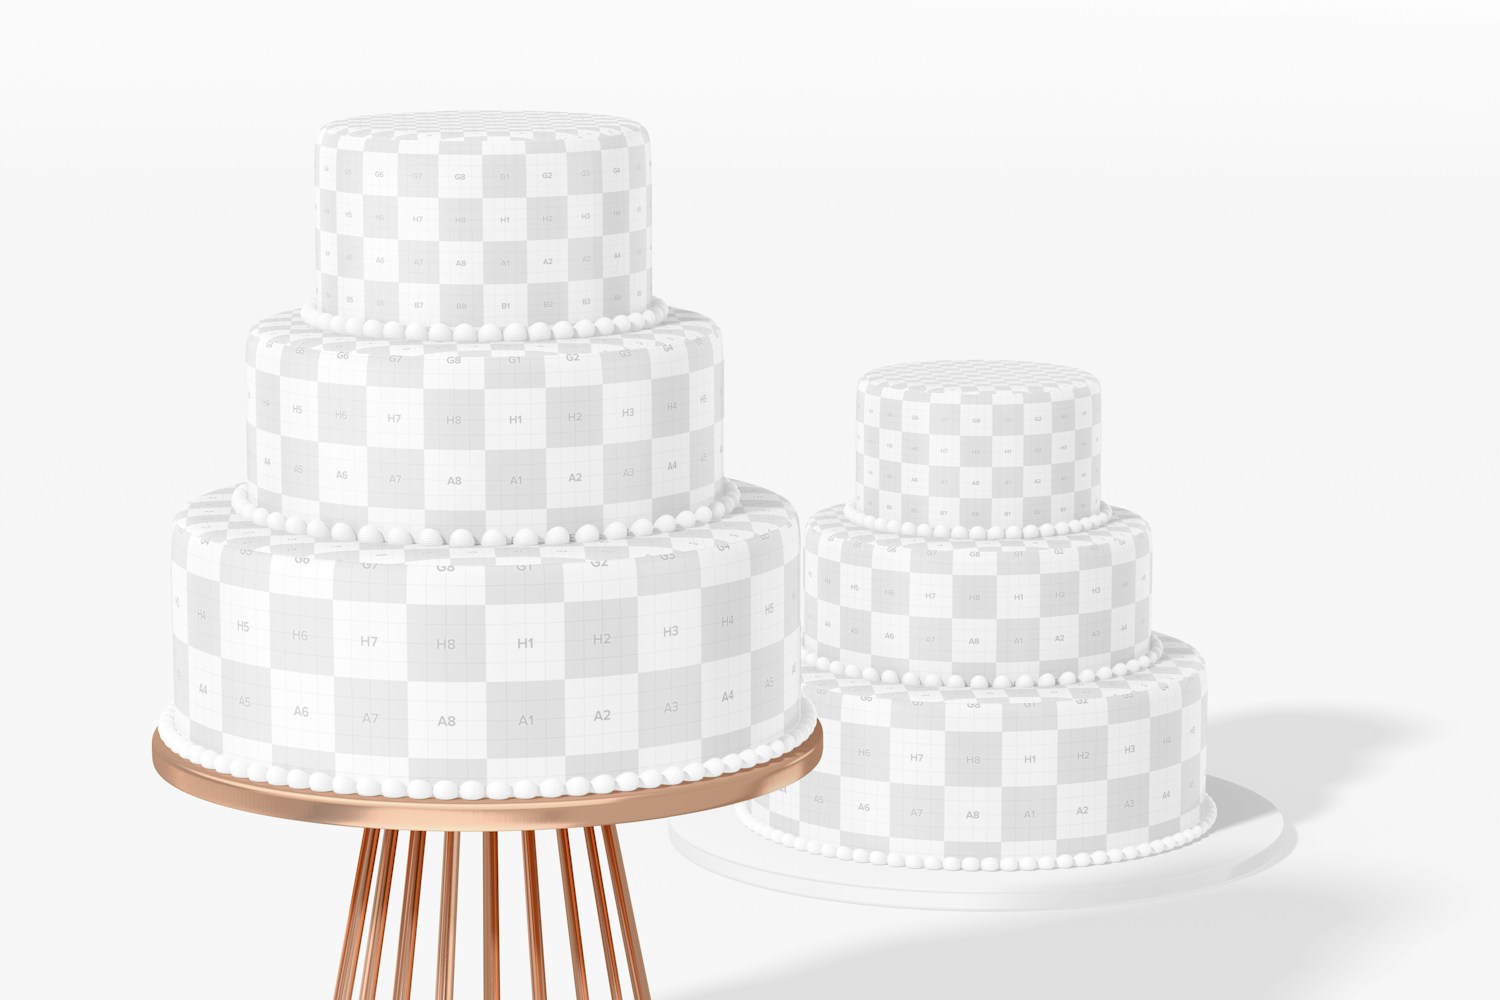 Wedding Cake Mockup, Perspective